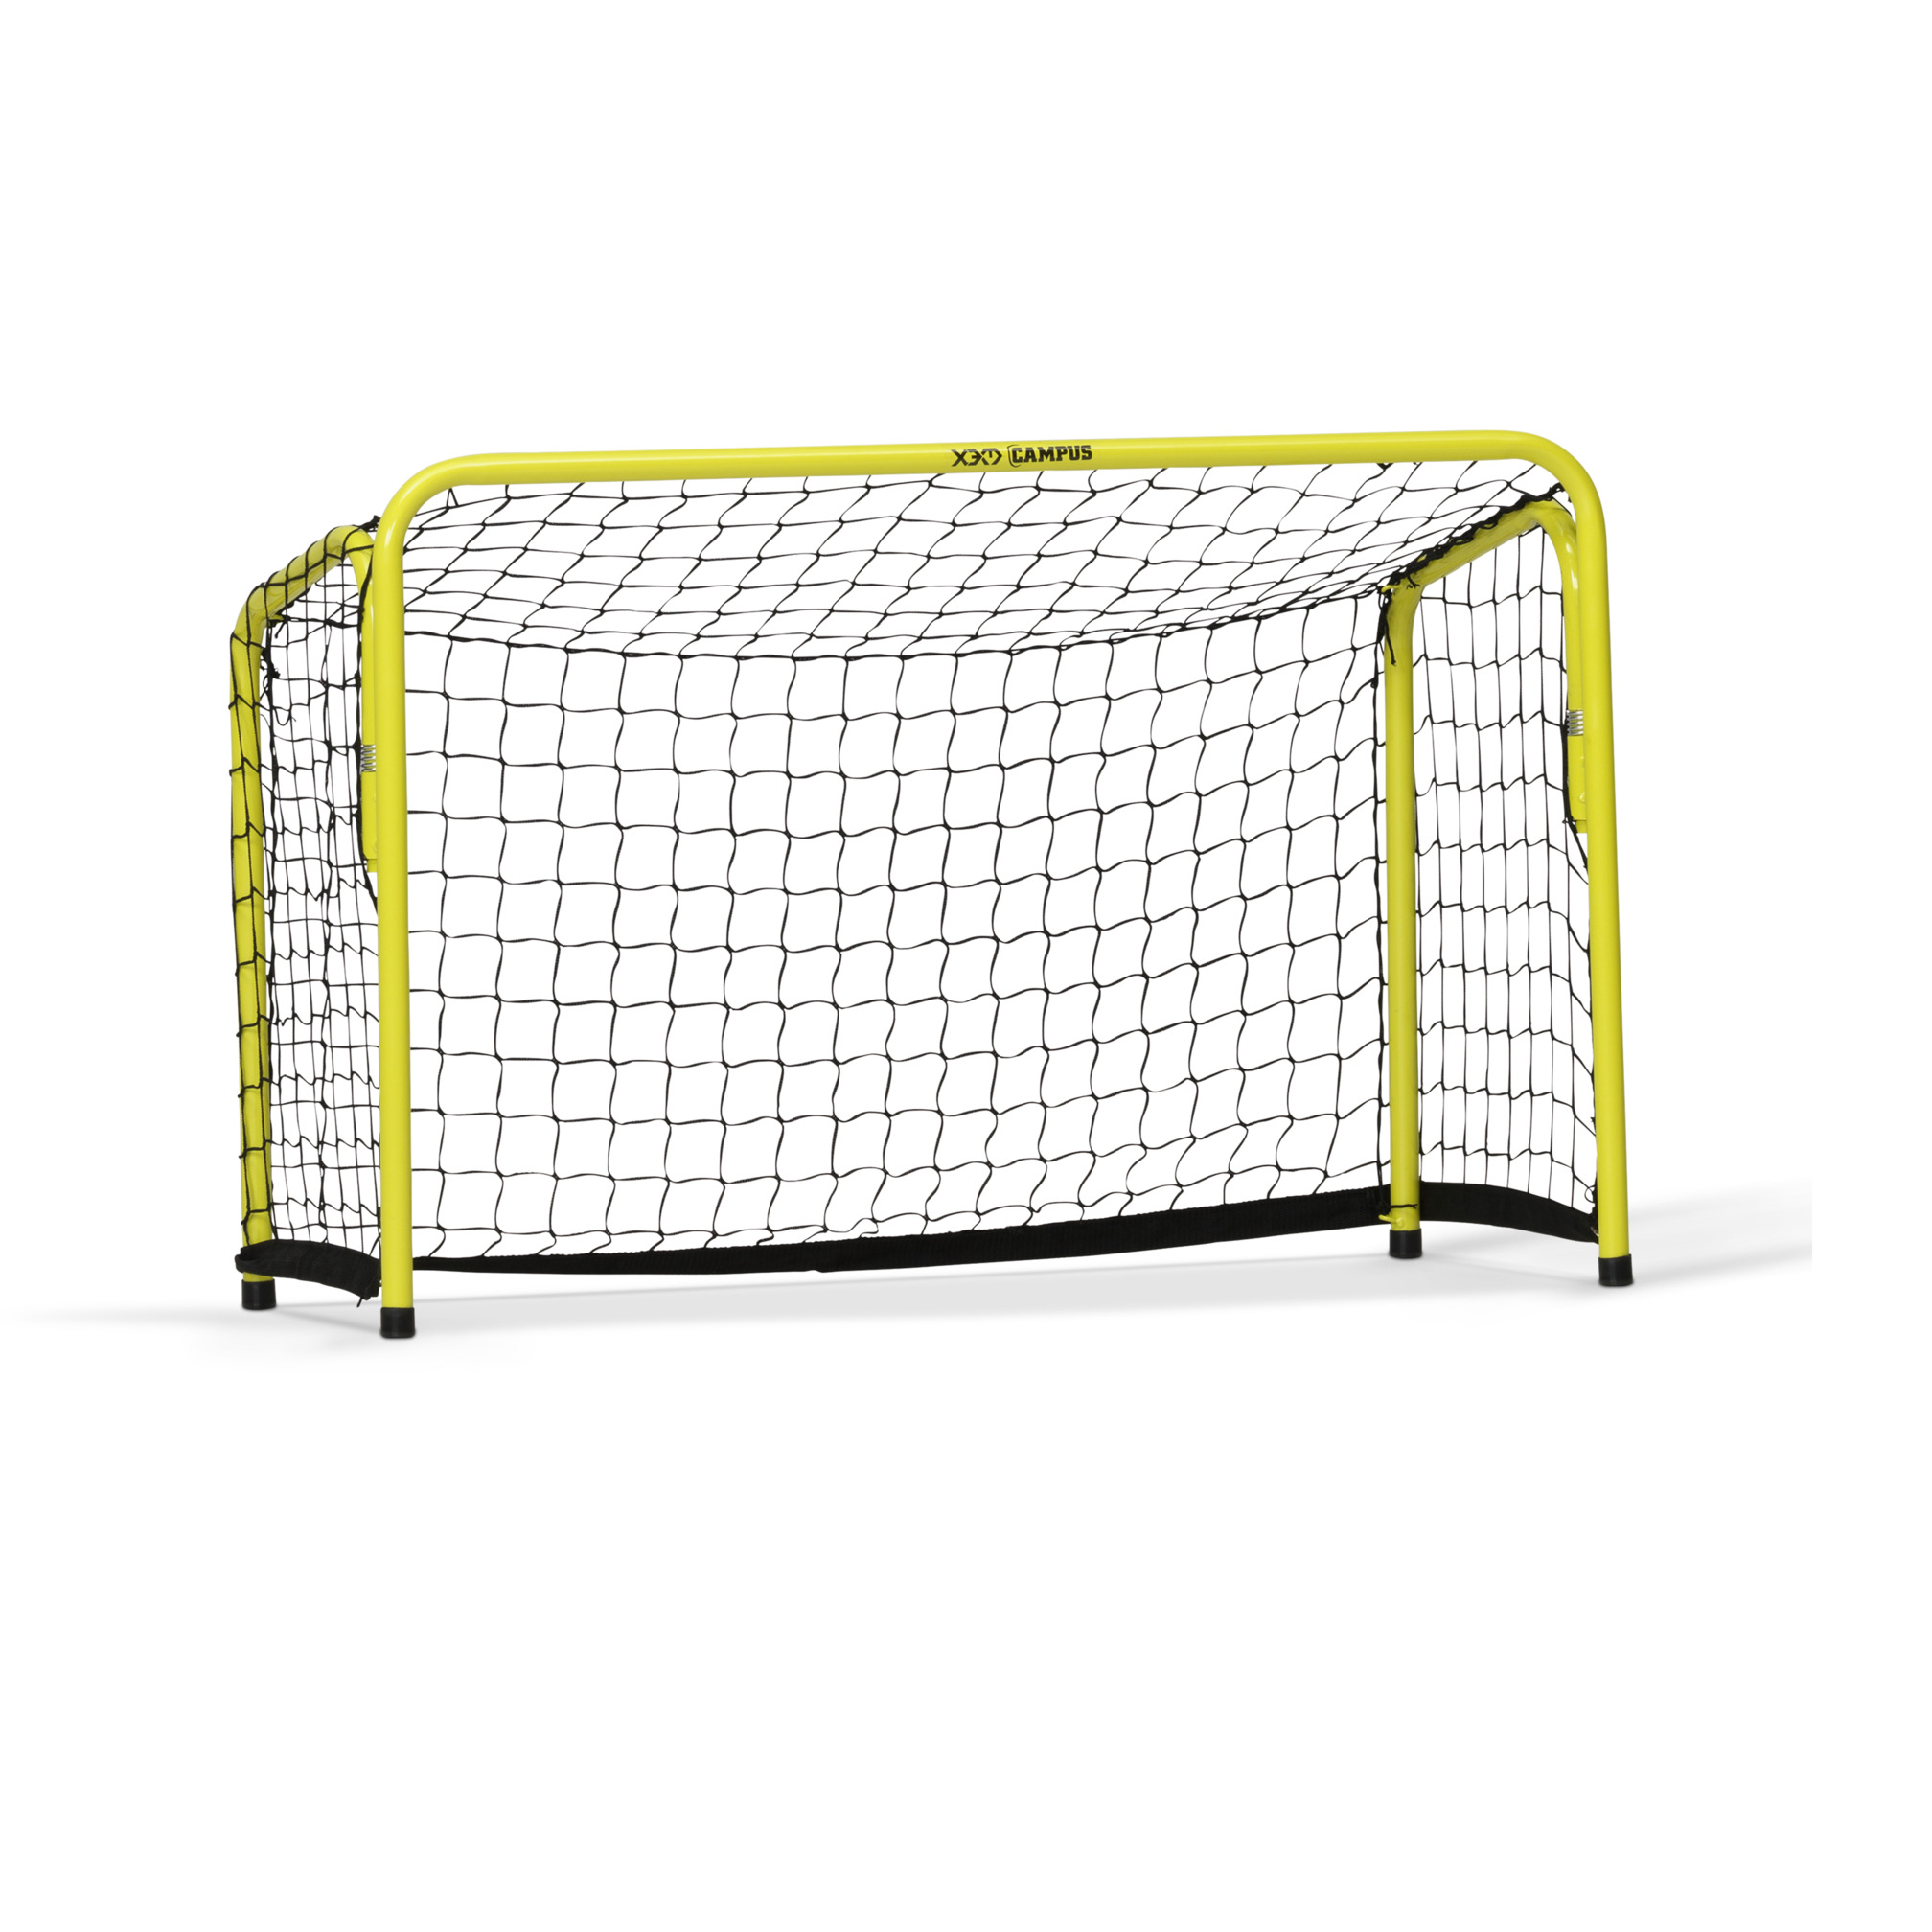 Foldable floorball goal, 90x60 cm